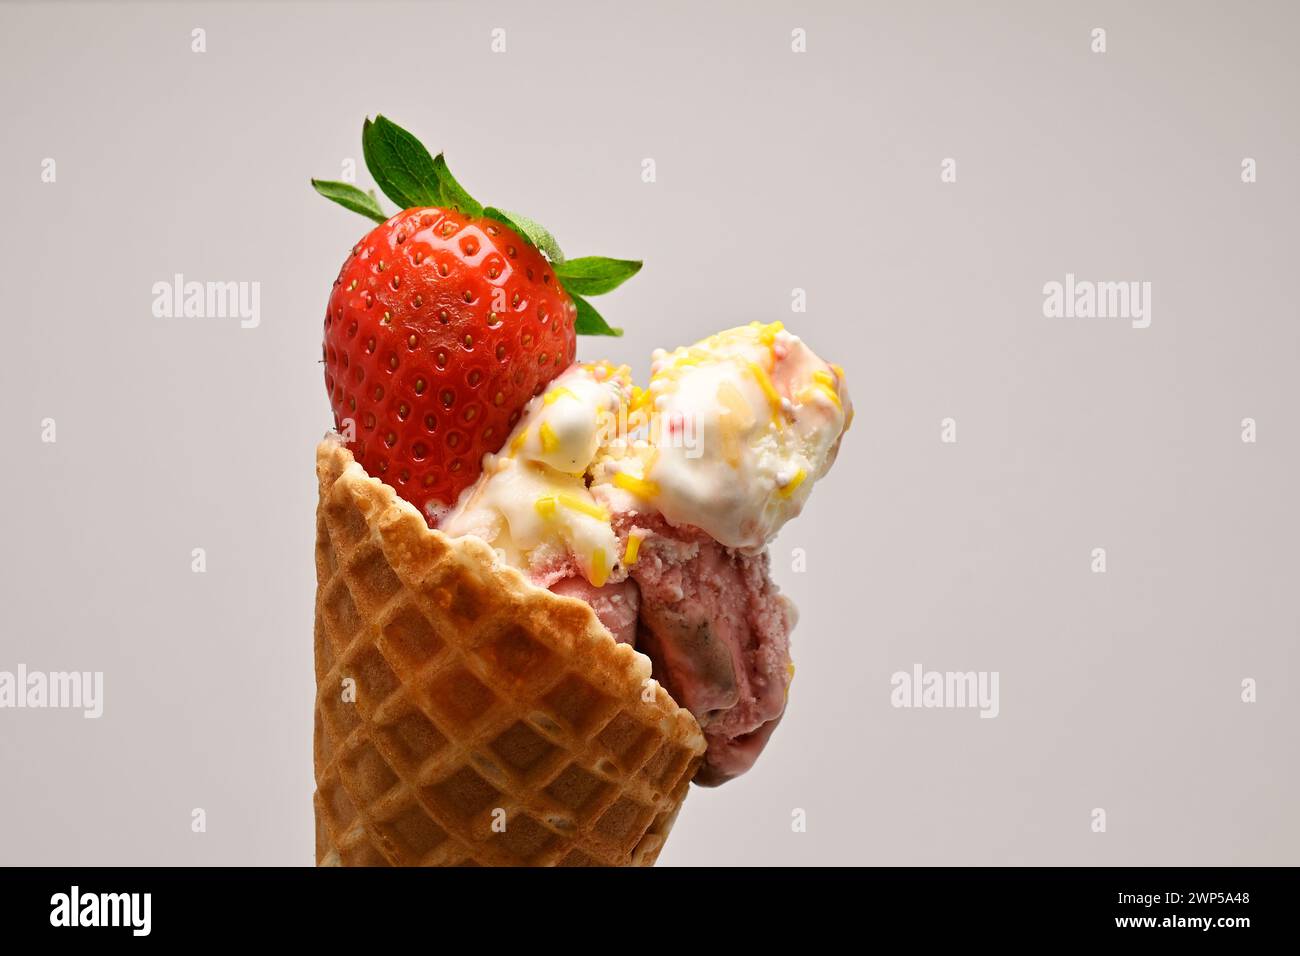 Köstliches Eis mit Vanille und Beeren in einem Waffelkegel mit frischem Erdbeeren- und Minzblatt auf weißem Hintergrund Stockfoto